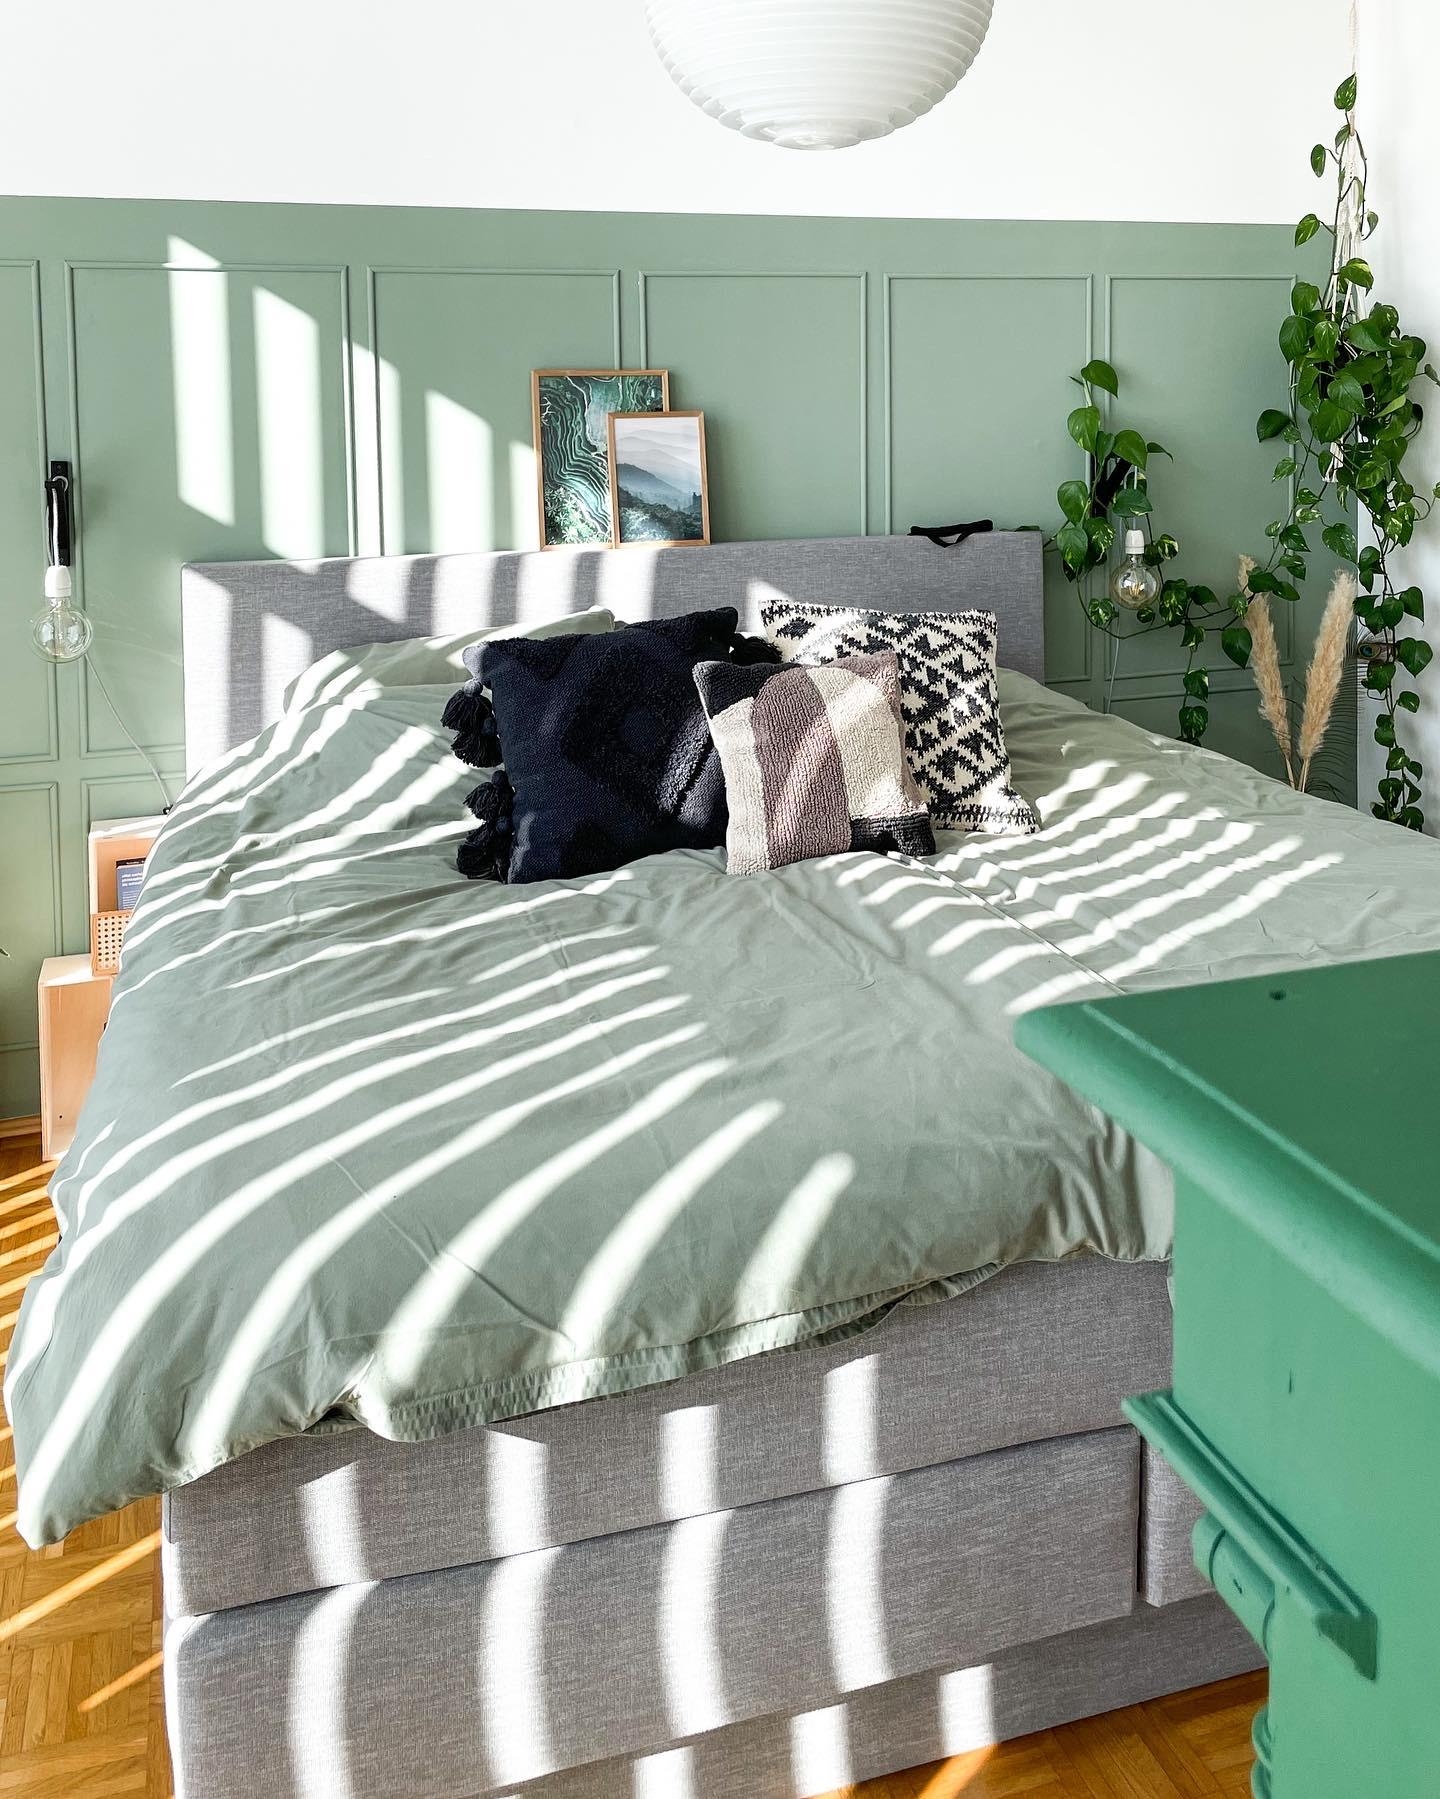 Streifen gehen immer!

#Sonne #Schlafzimmer #Greenliving 
#Bett #Wandvertäfelung